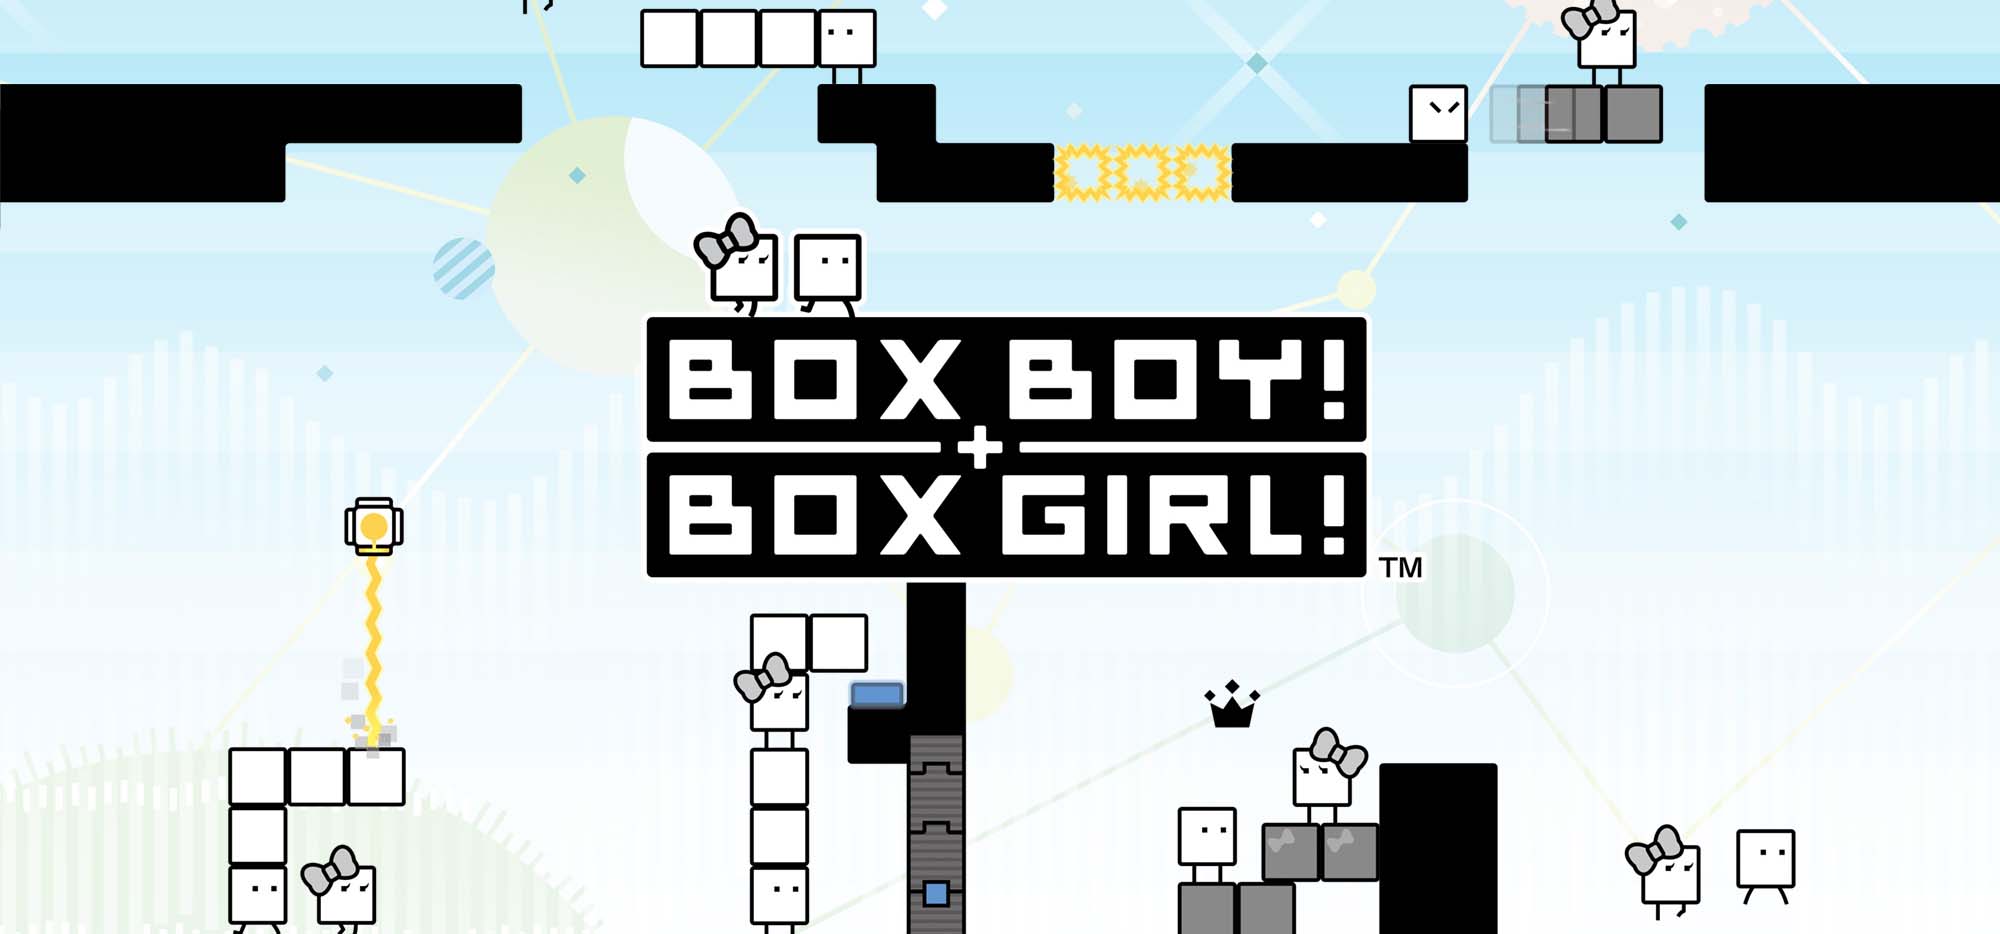 Boxboy and Boxgirl Nintendo Switch